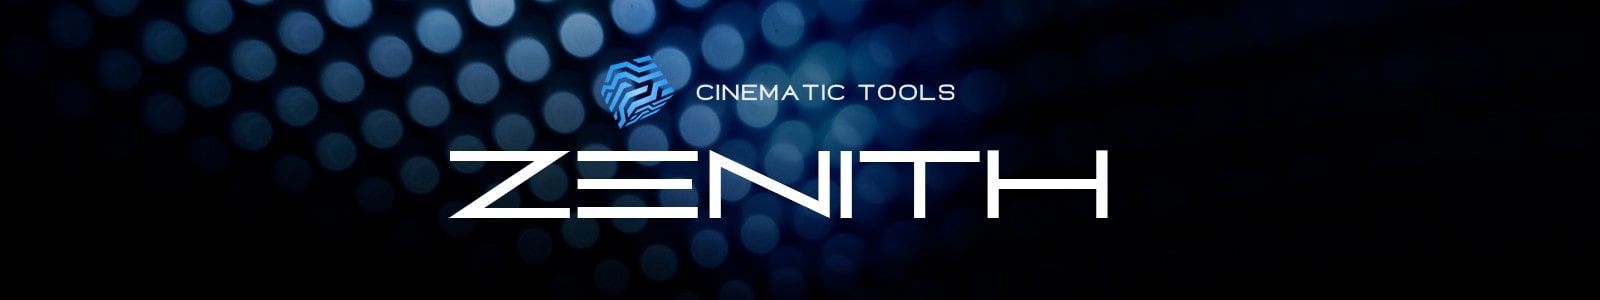 Cinematic Tools ZENITH